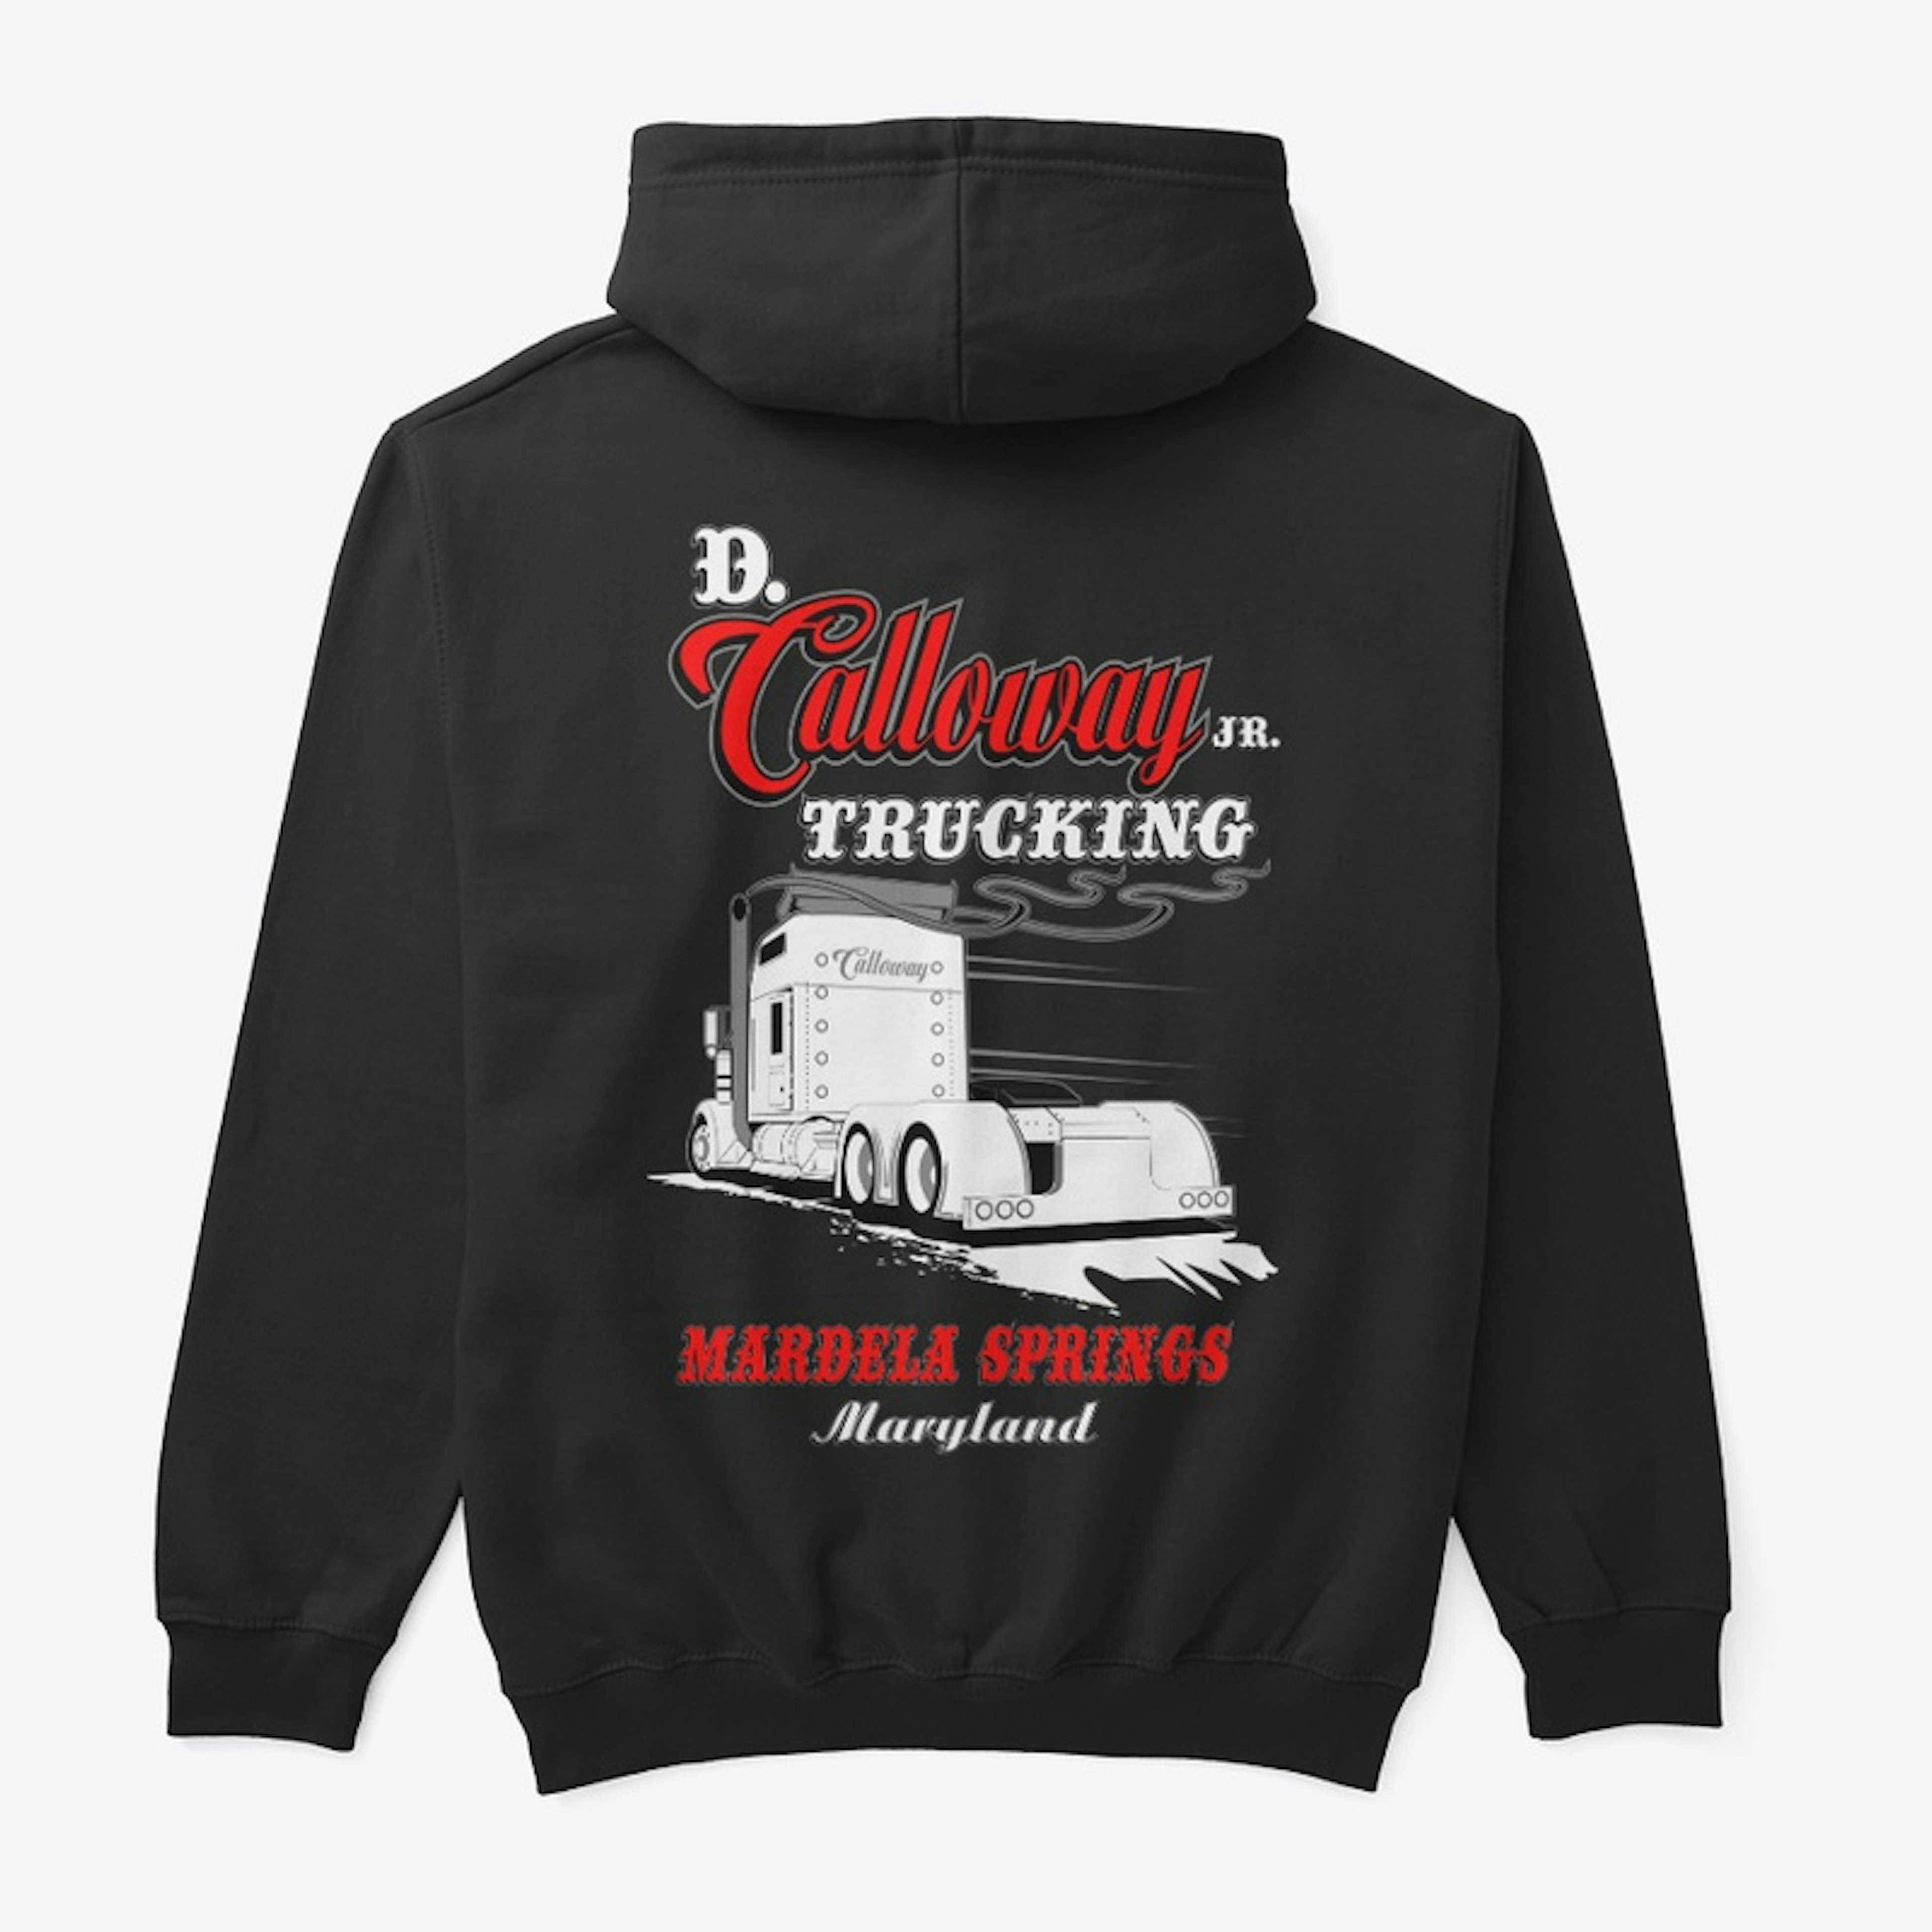 D. Calloway Jr. Trucking